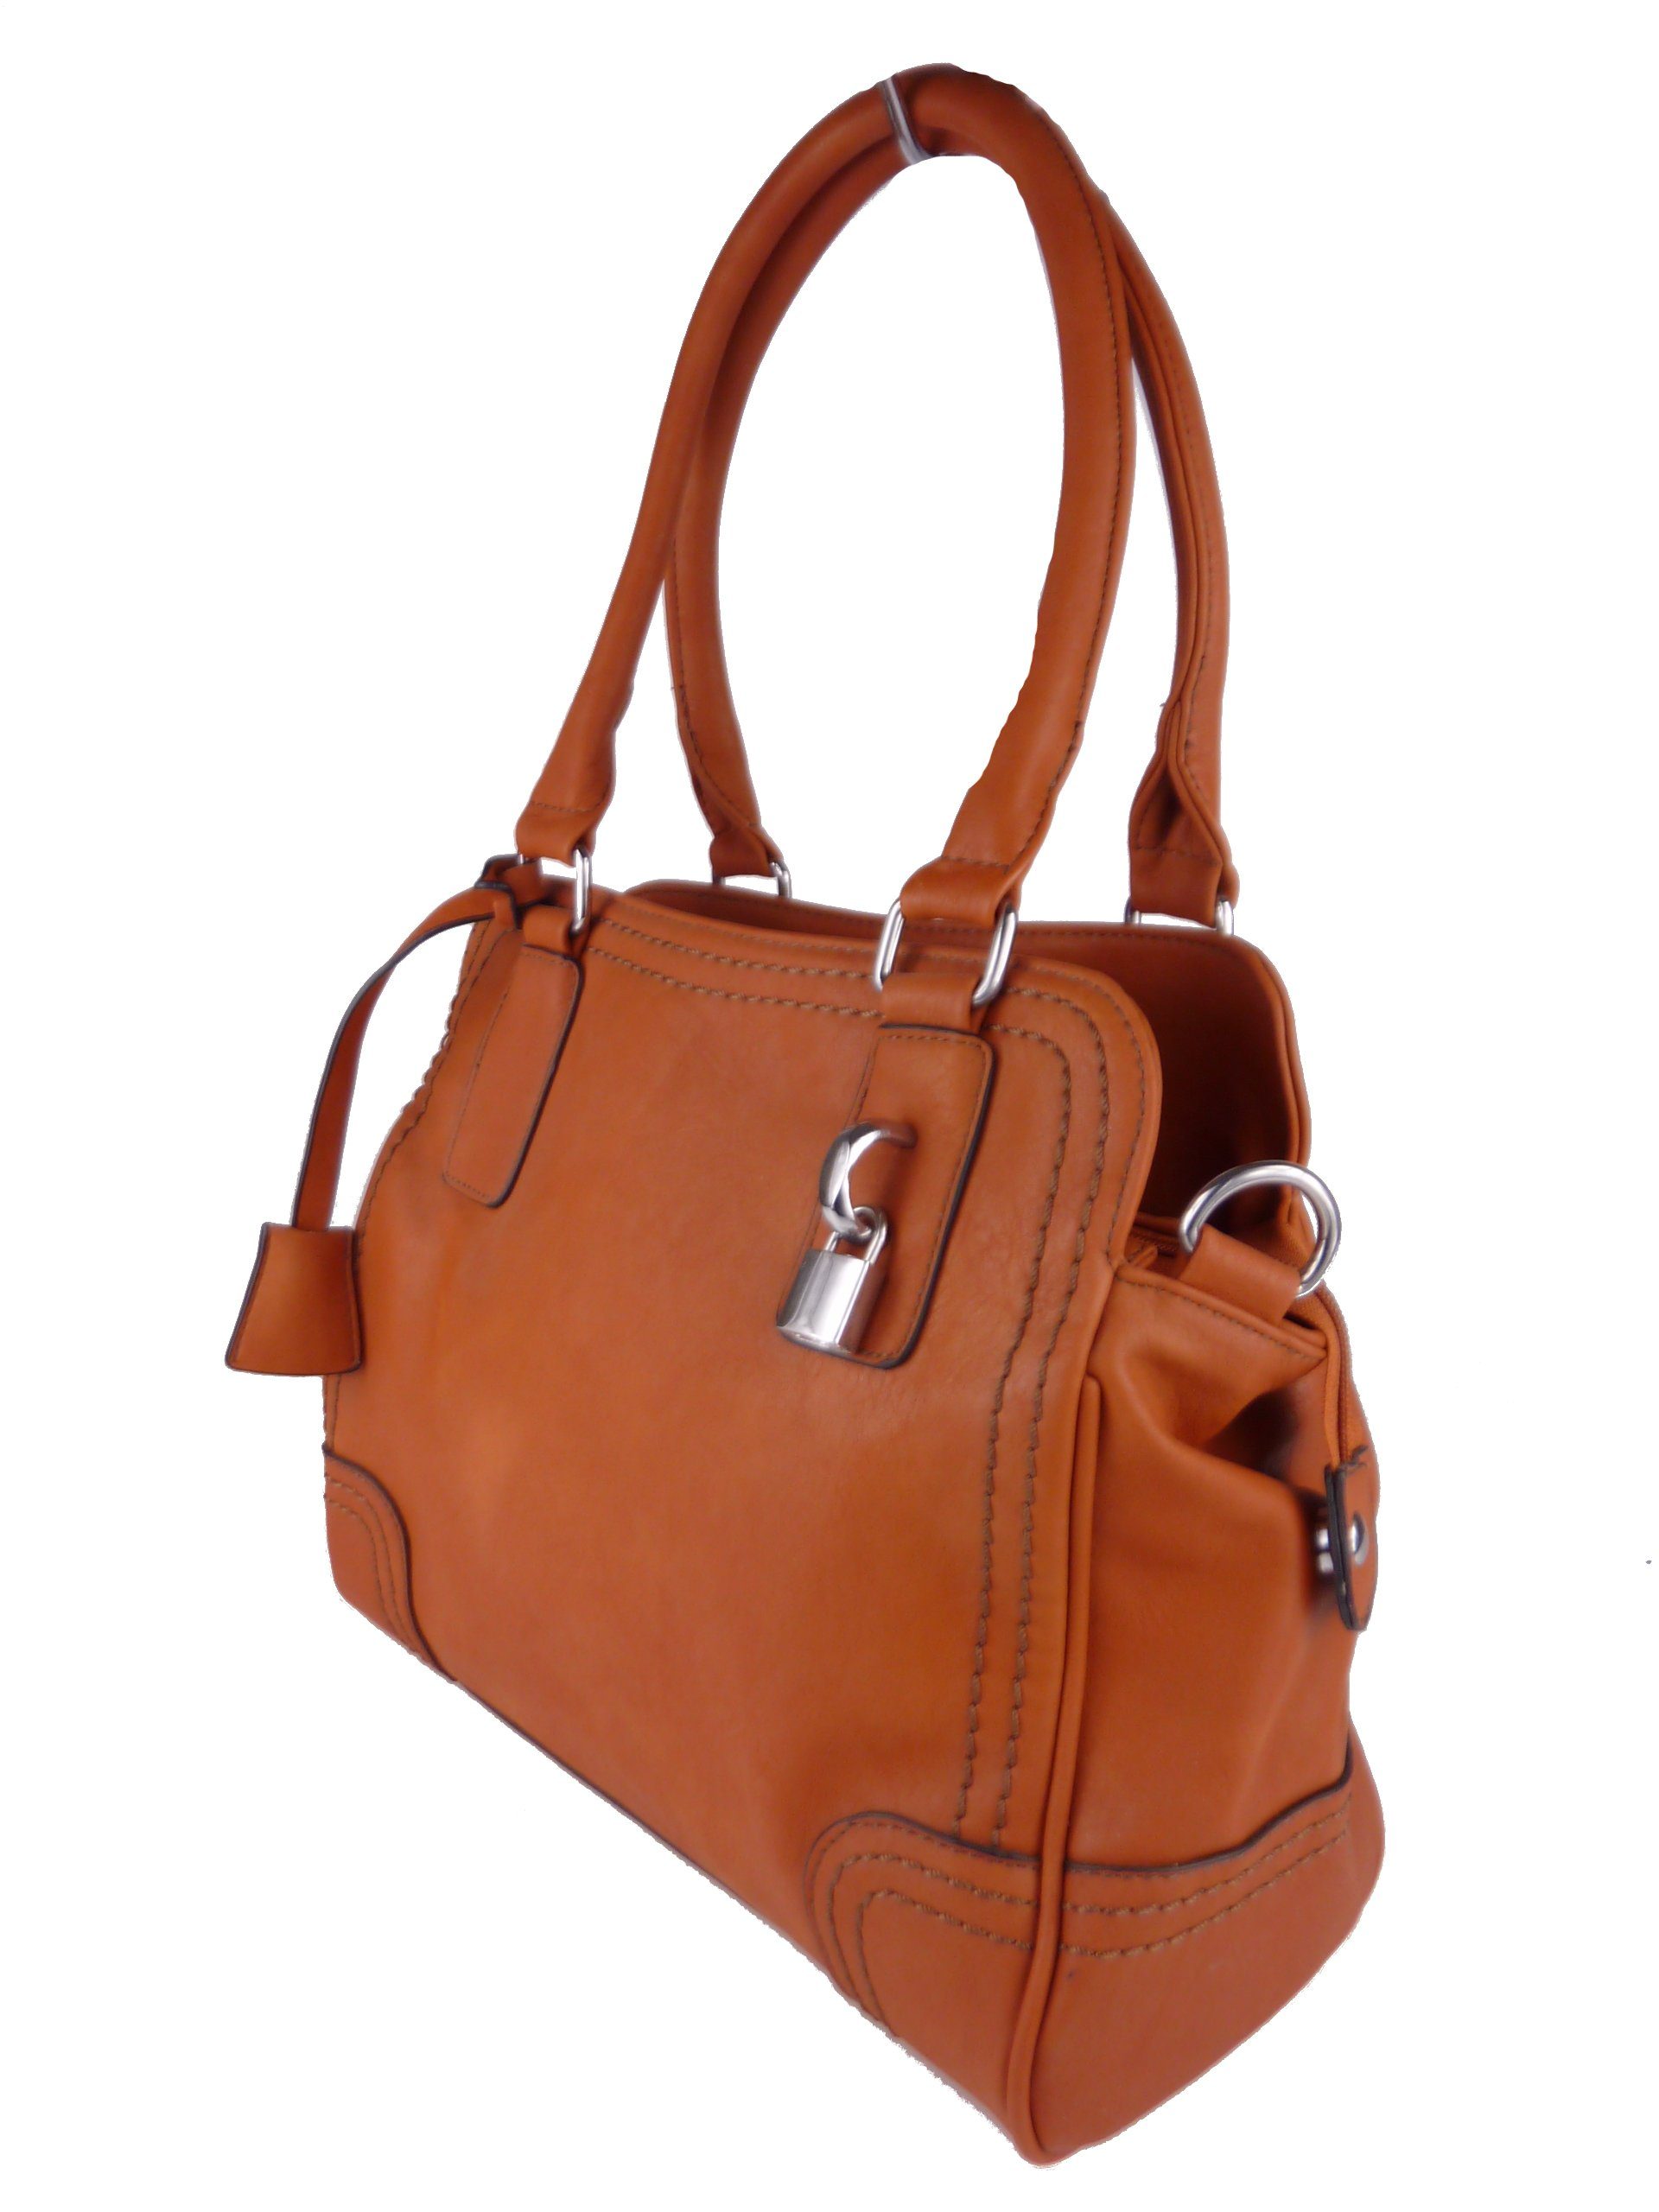 Taschen4life Handtasche klassische Handtasche C1125, satchel hobo bag, tote weat/brown elegante Schultertasche